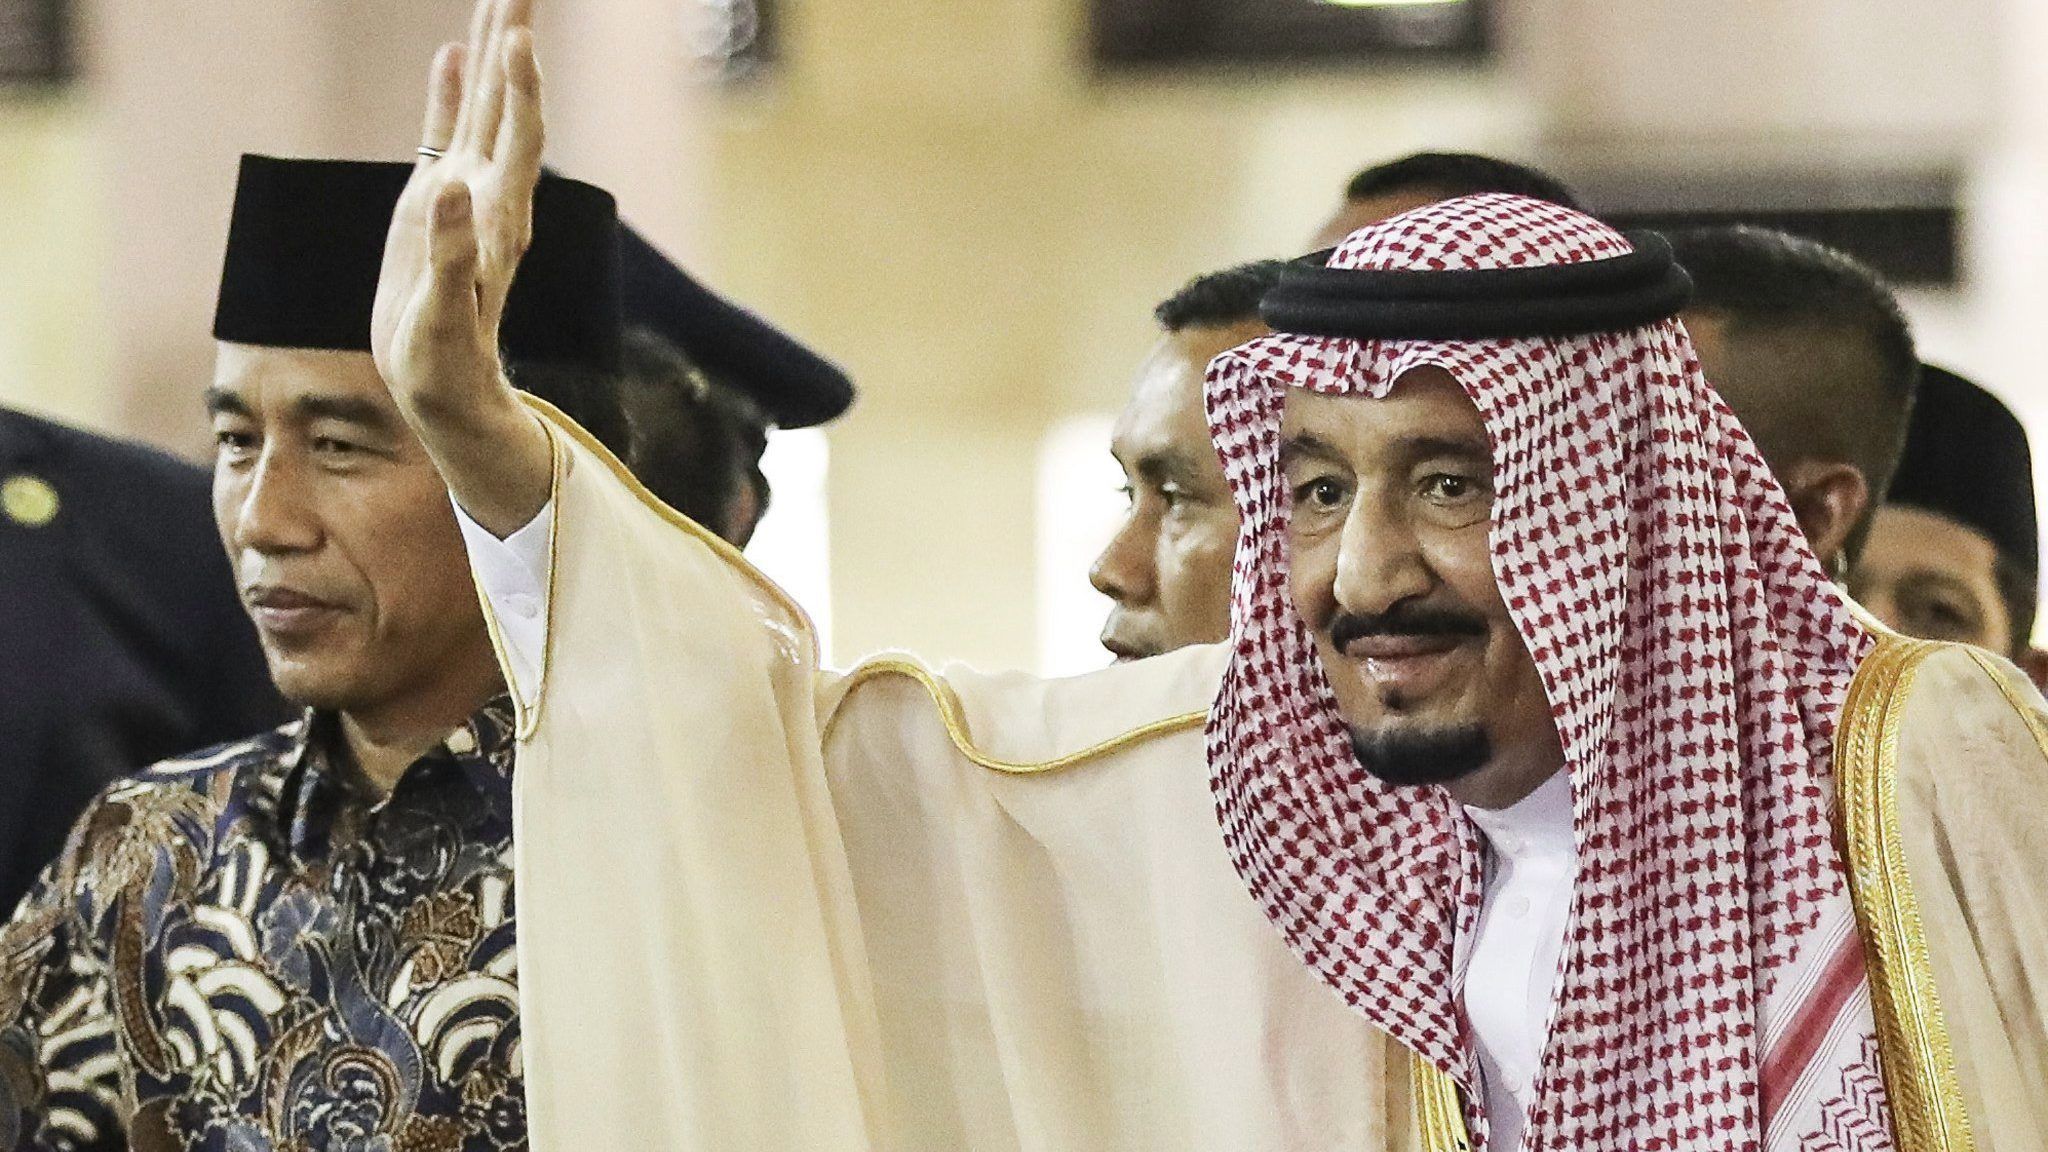 Leváltotta miniszterét, majd egyik fiát nevezte ki a helyére a szaúdi király